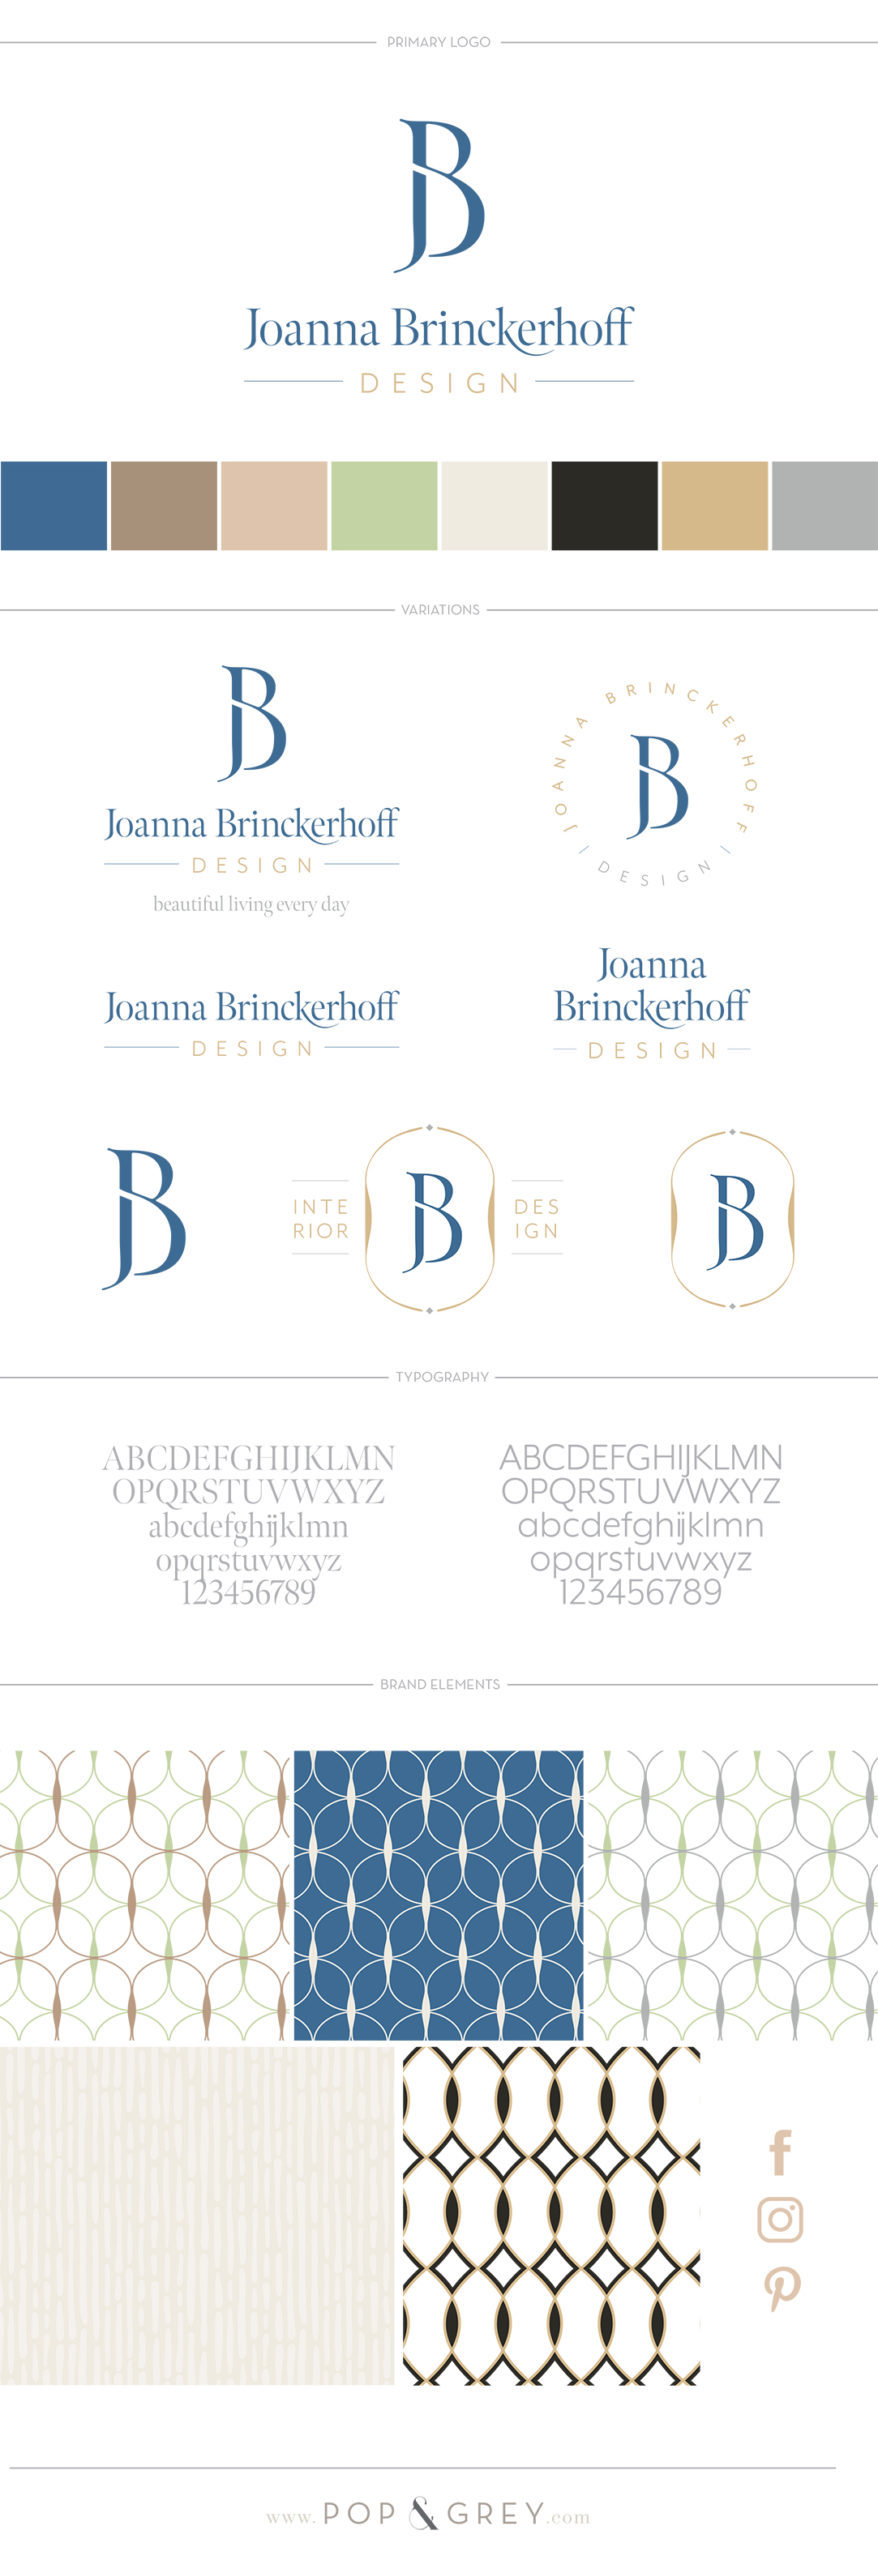 joanna brinckerhoff brand design by pop and grey